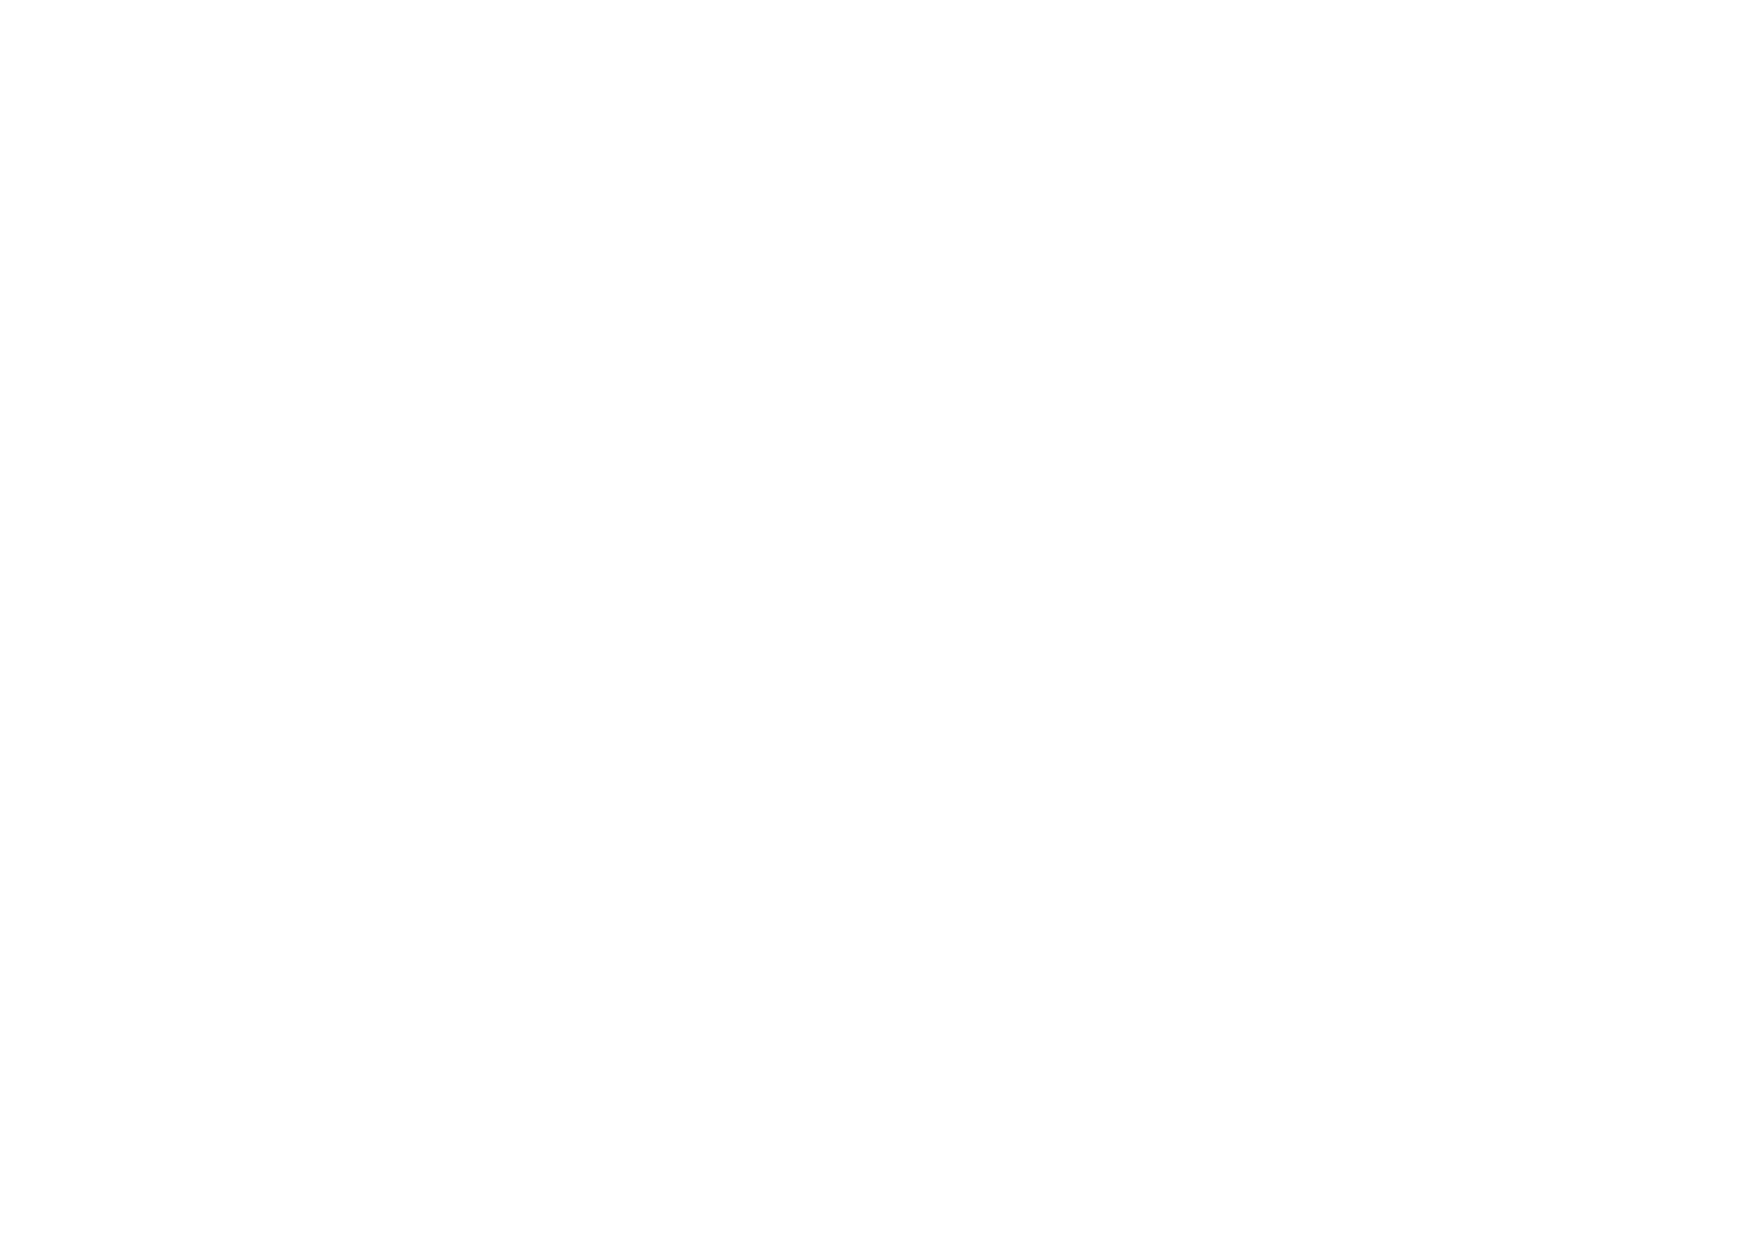 Hutt City Baptist Church